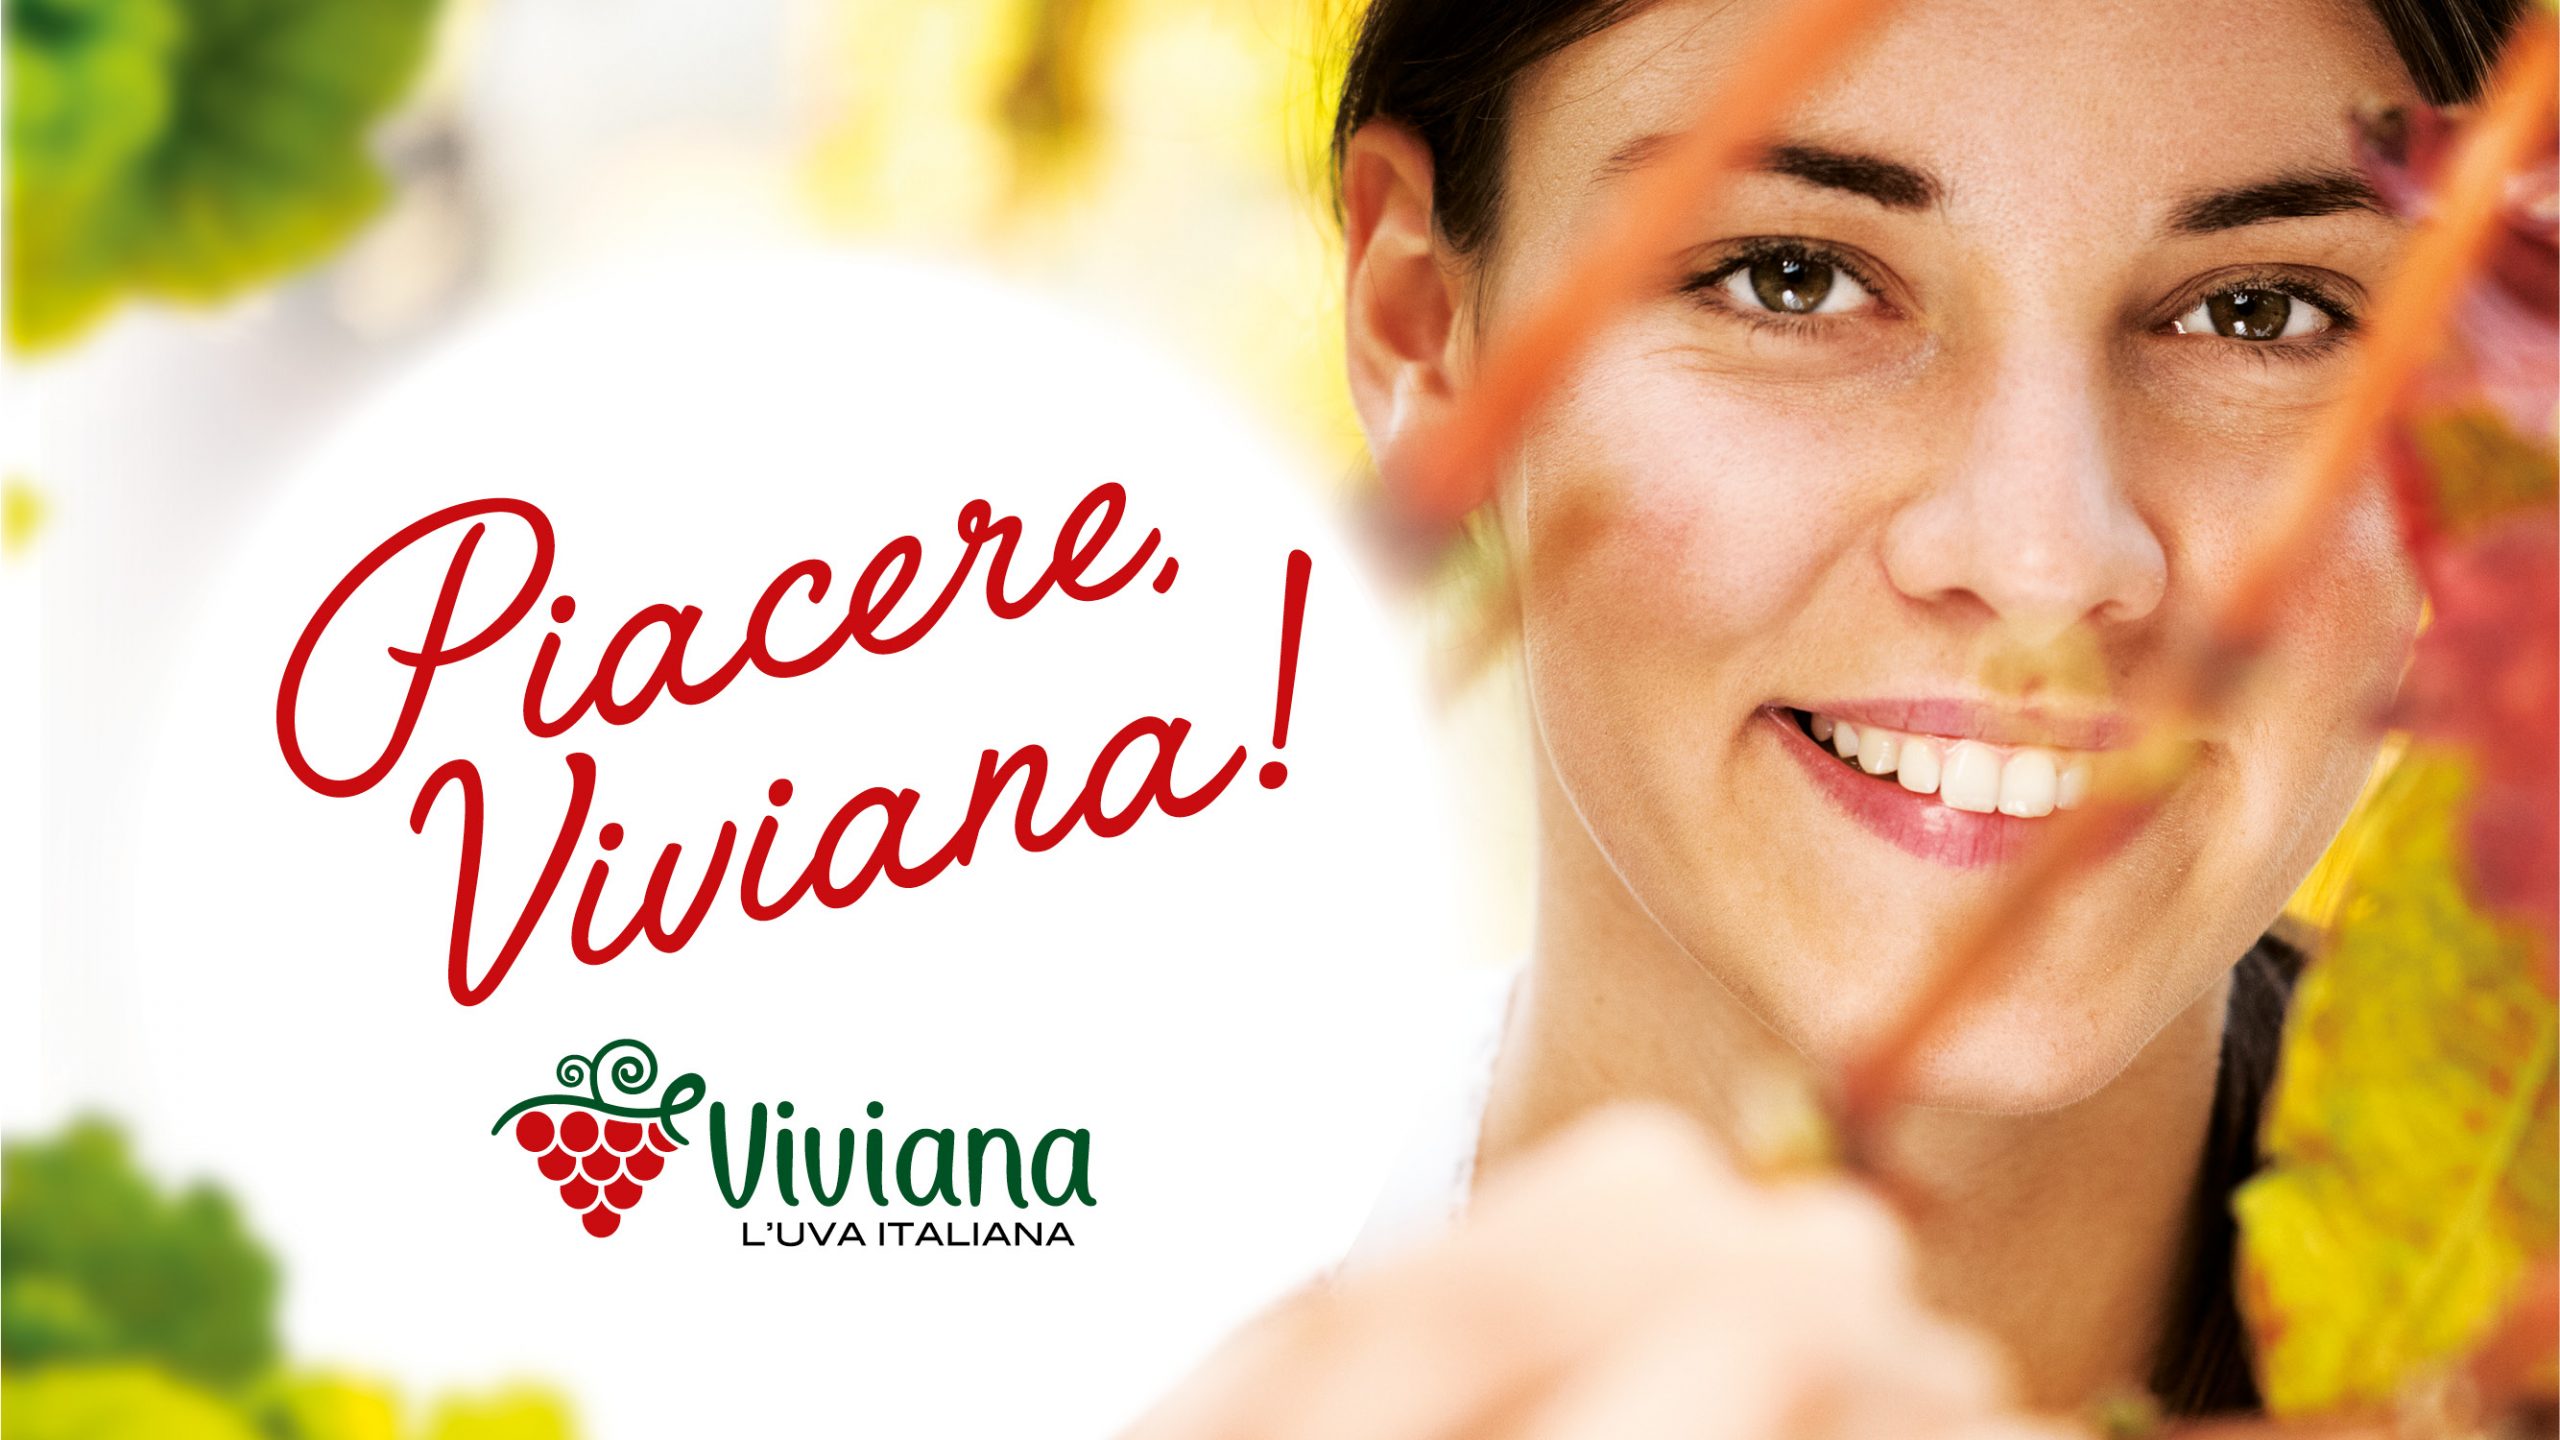 Menabò agenzia di comunicazione a Forlì - Viviana l'uva italiana - cover